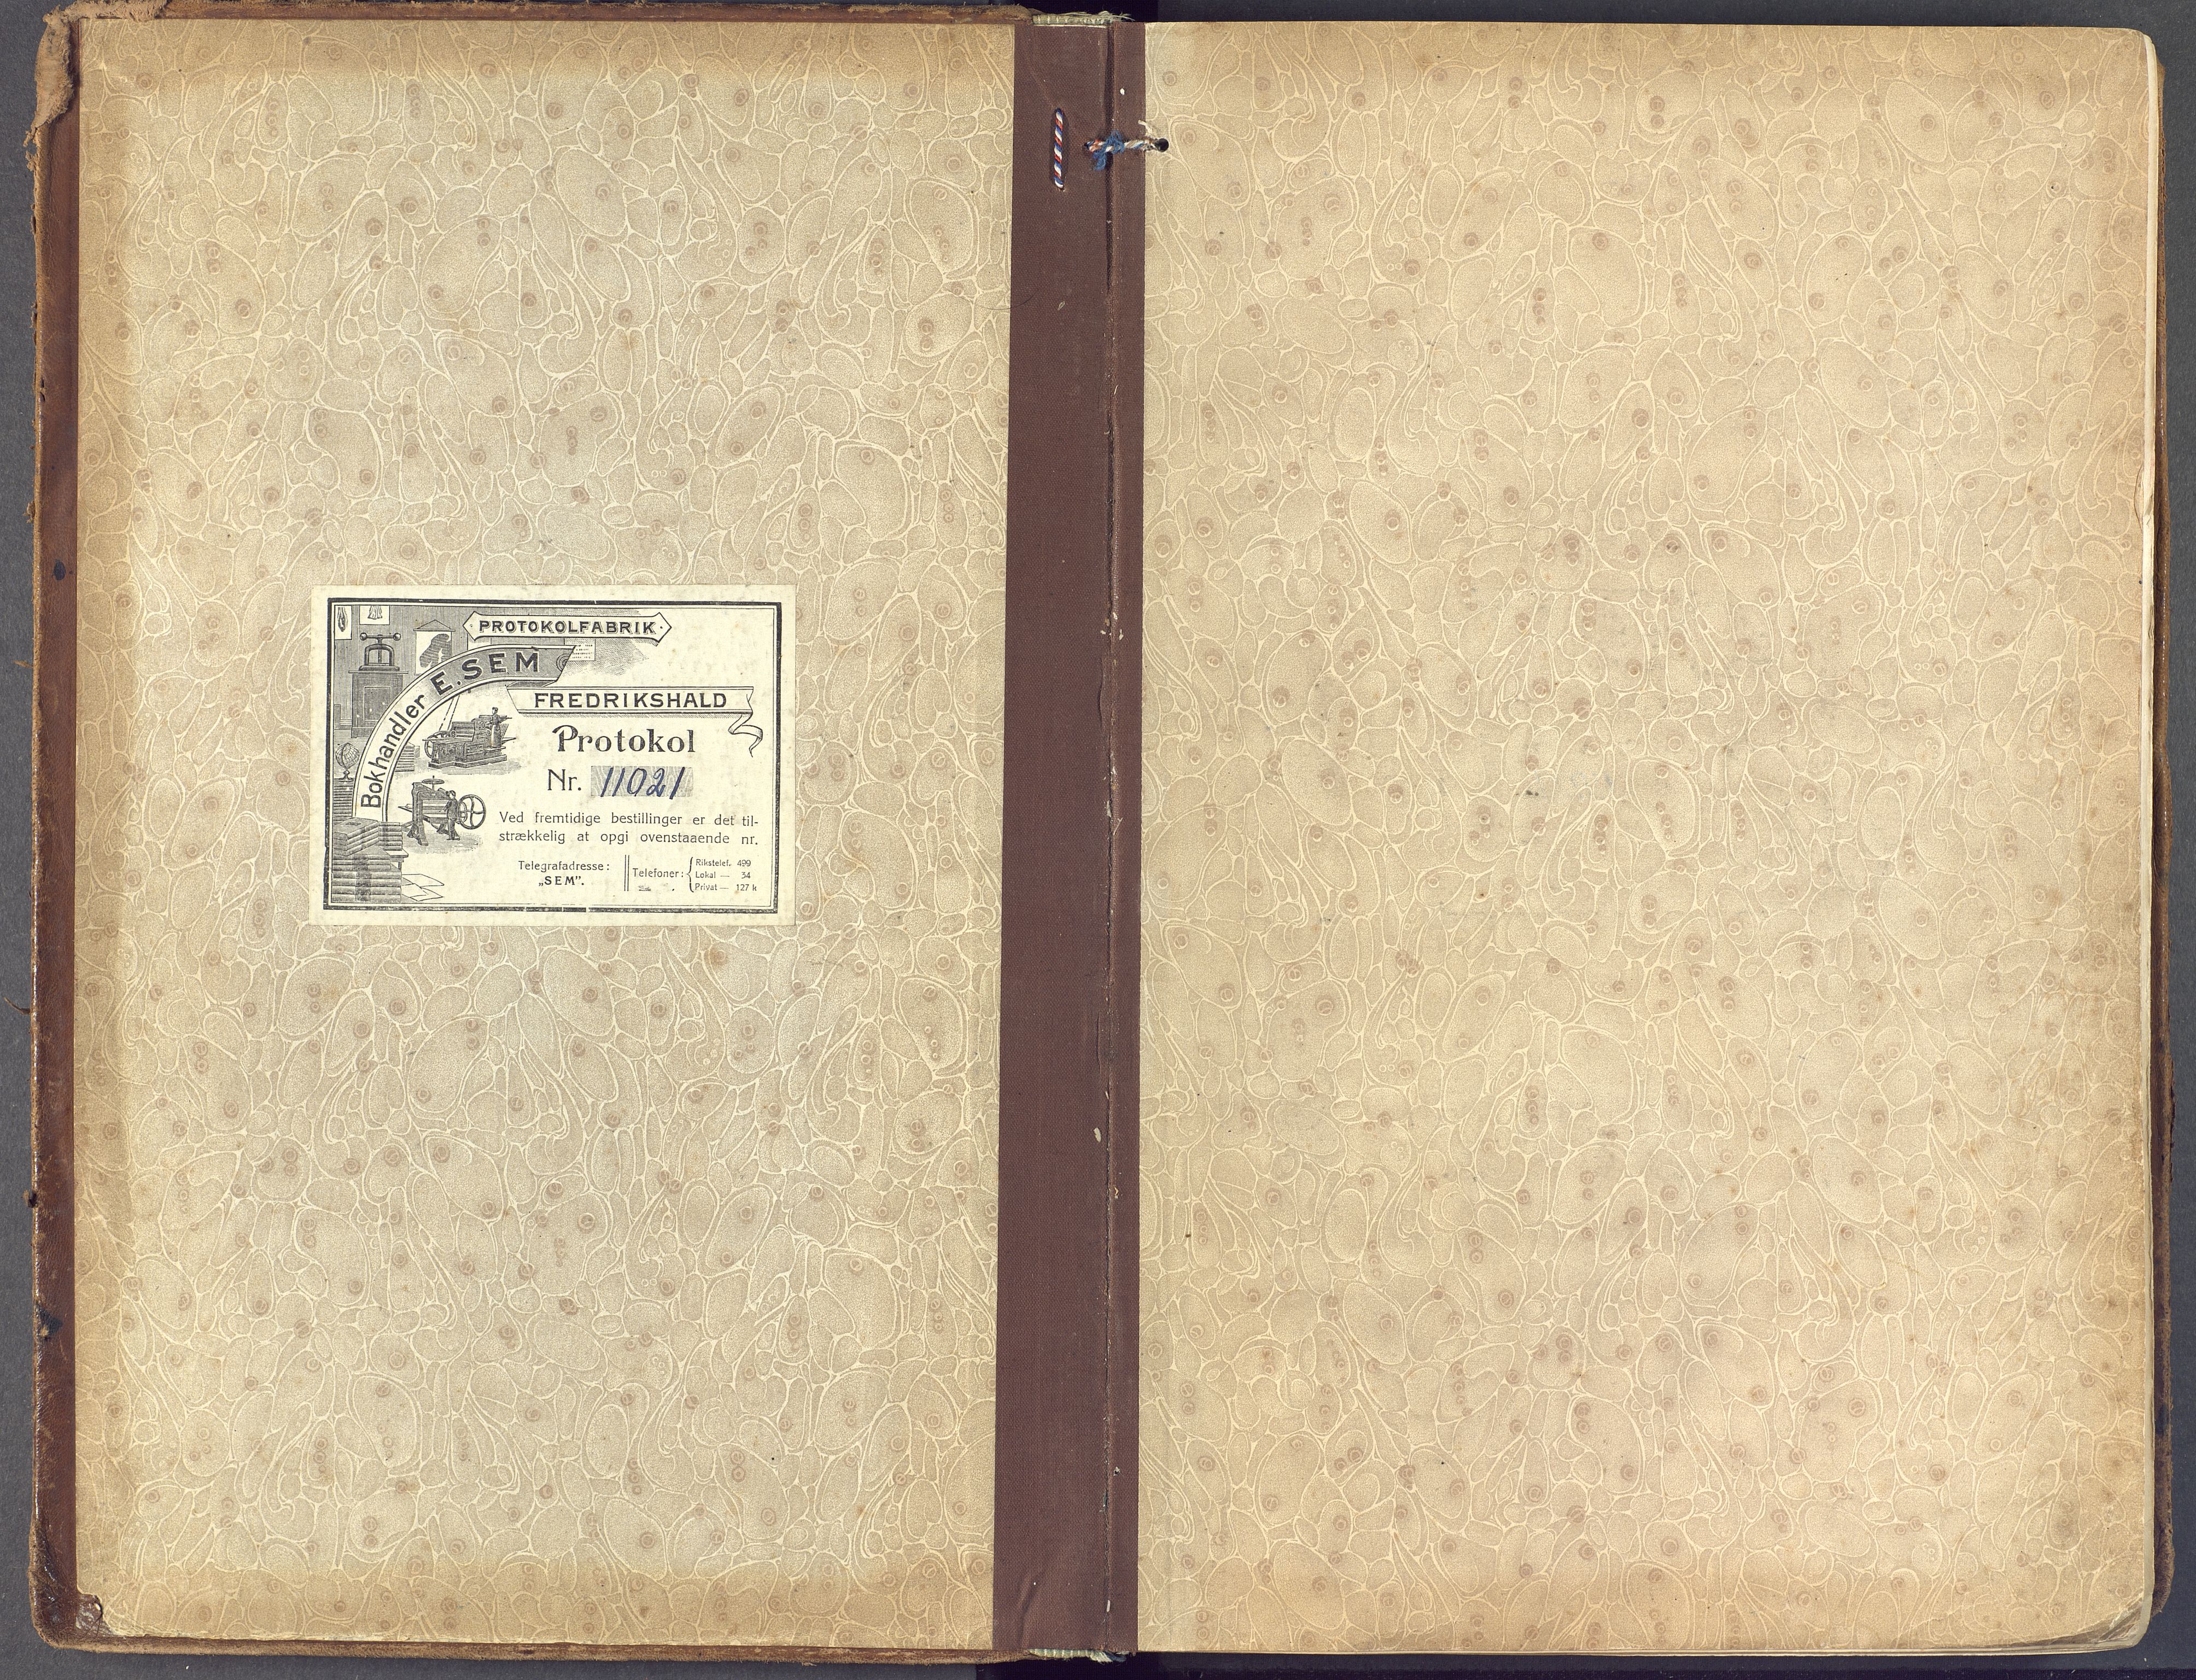 Horten kirkebøker, SAKO/A-348/F/Fa/L0012: Ministerialbok nr. 12, 1913-1926